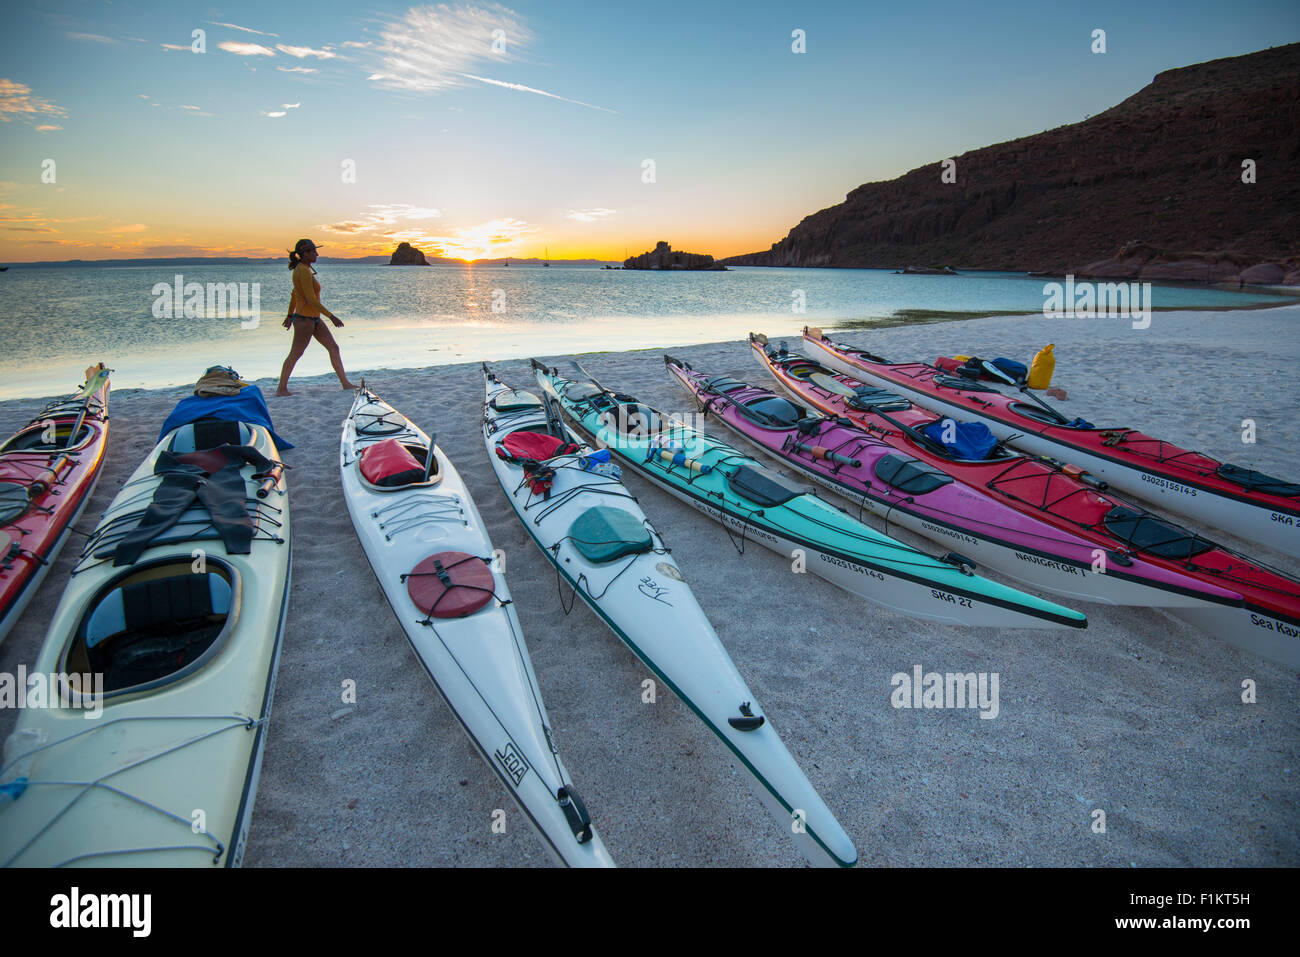 México, Baja, Lapaz, Espiritu Santo. Mujer de pie cerca de los kayaks durante la puesta de sol. Foto de stock